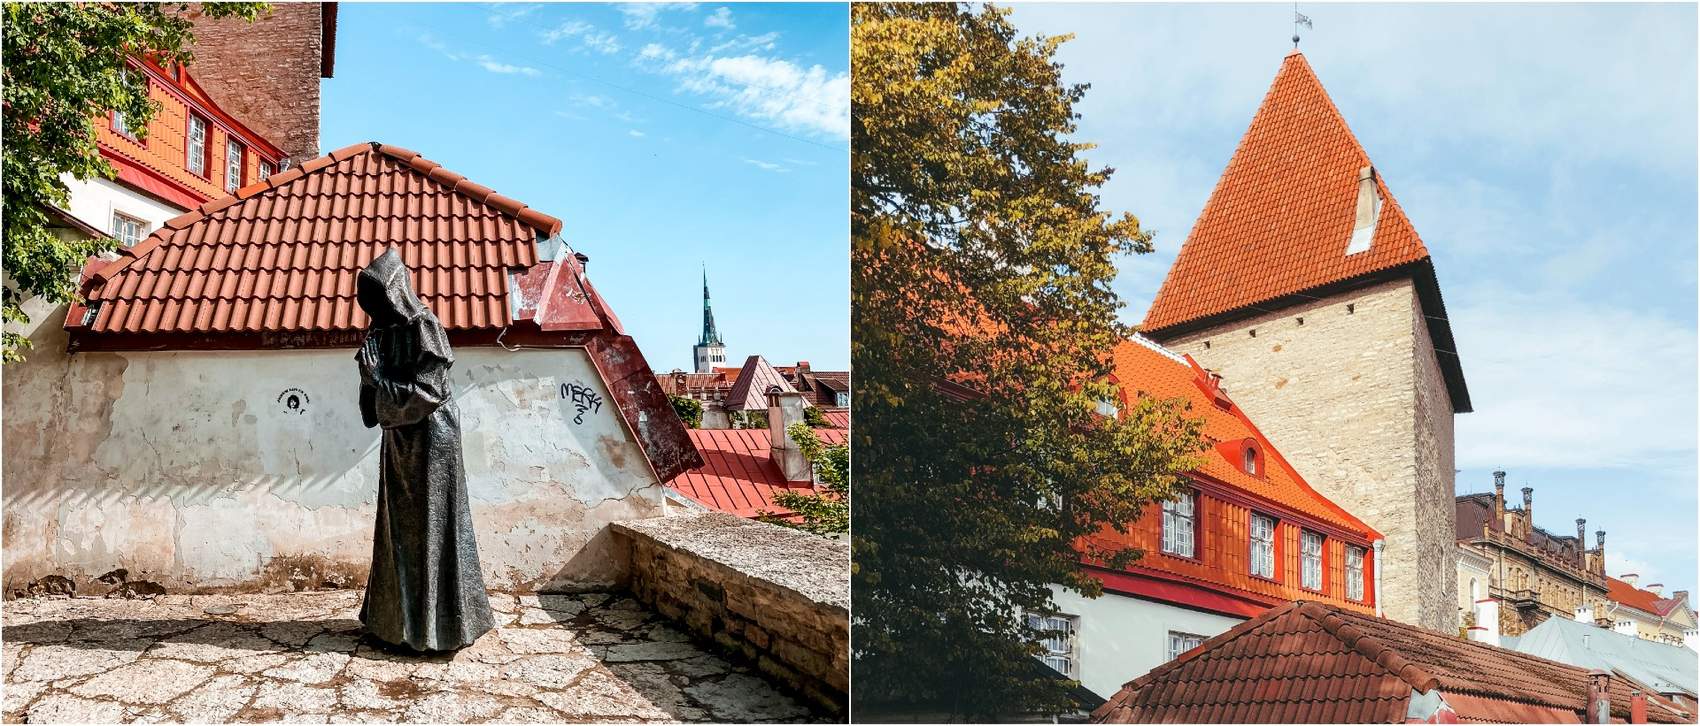 The monk of the Danish Kings Garden in the Old Town of Tallinn, Estonia Photo: Kadi-Liis Koppel